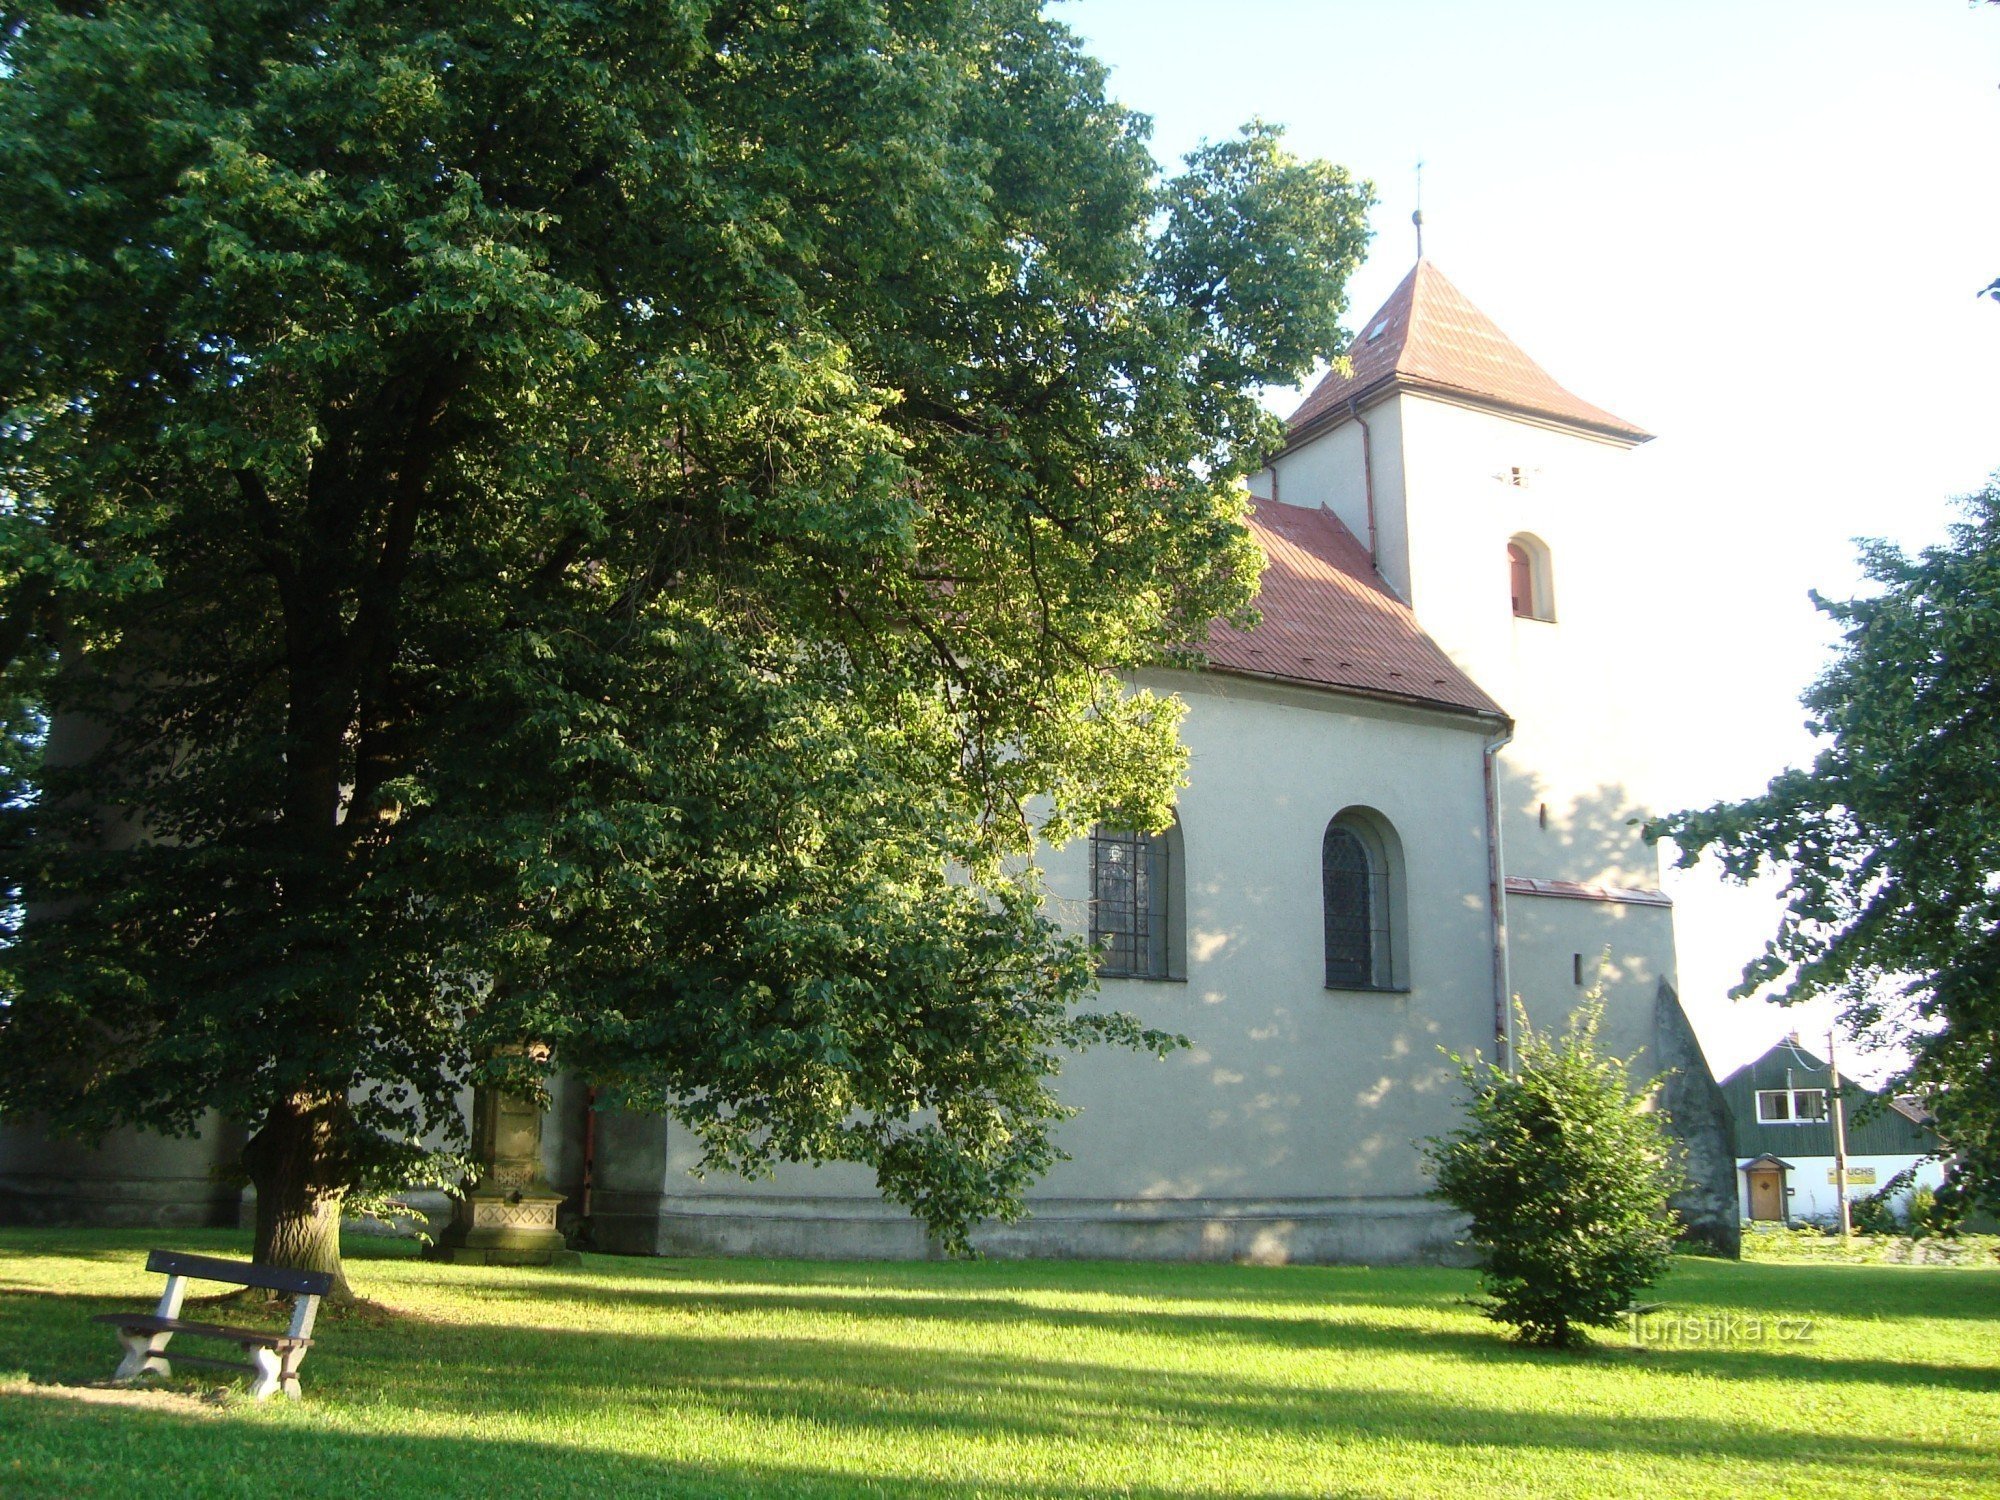 Domašov lähellä Šternberkaa - Pyhän Martin kirkko - Kuva: Ulrych Mir.